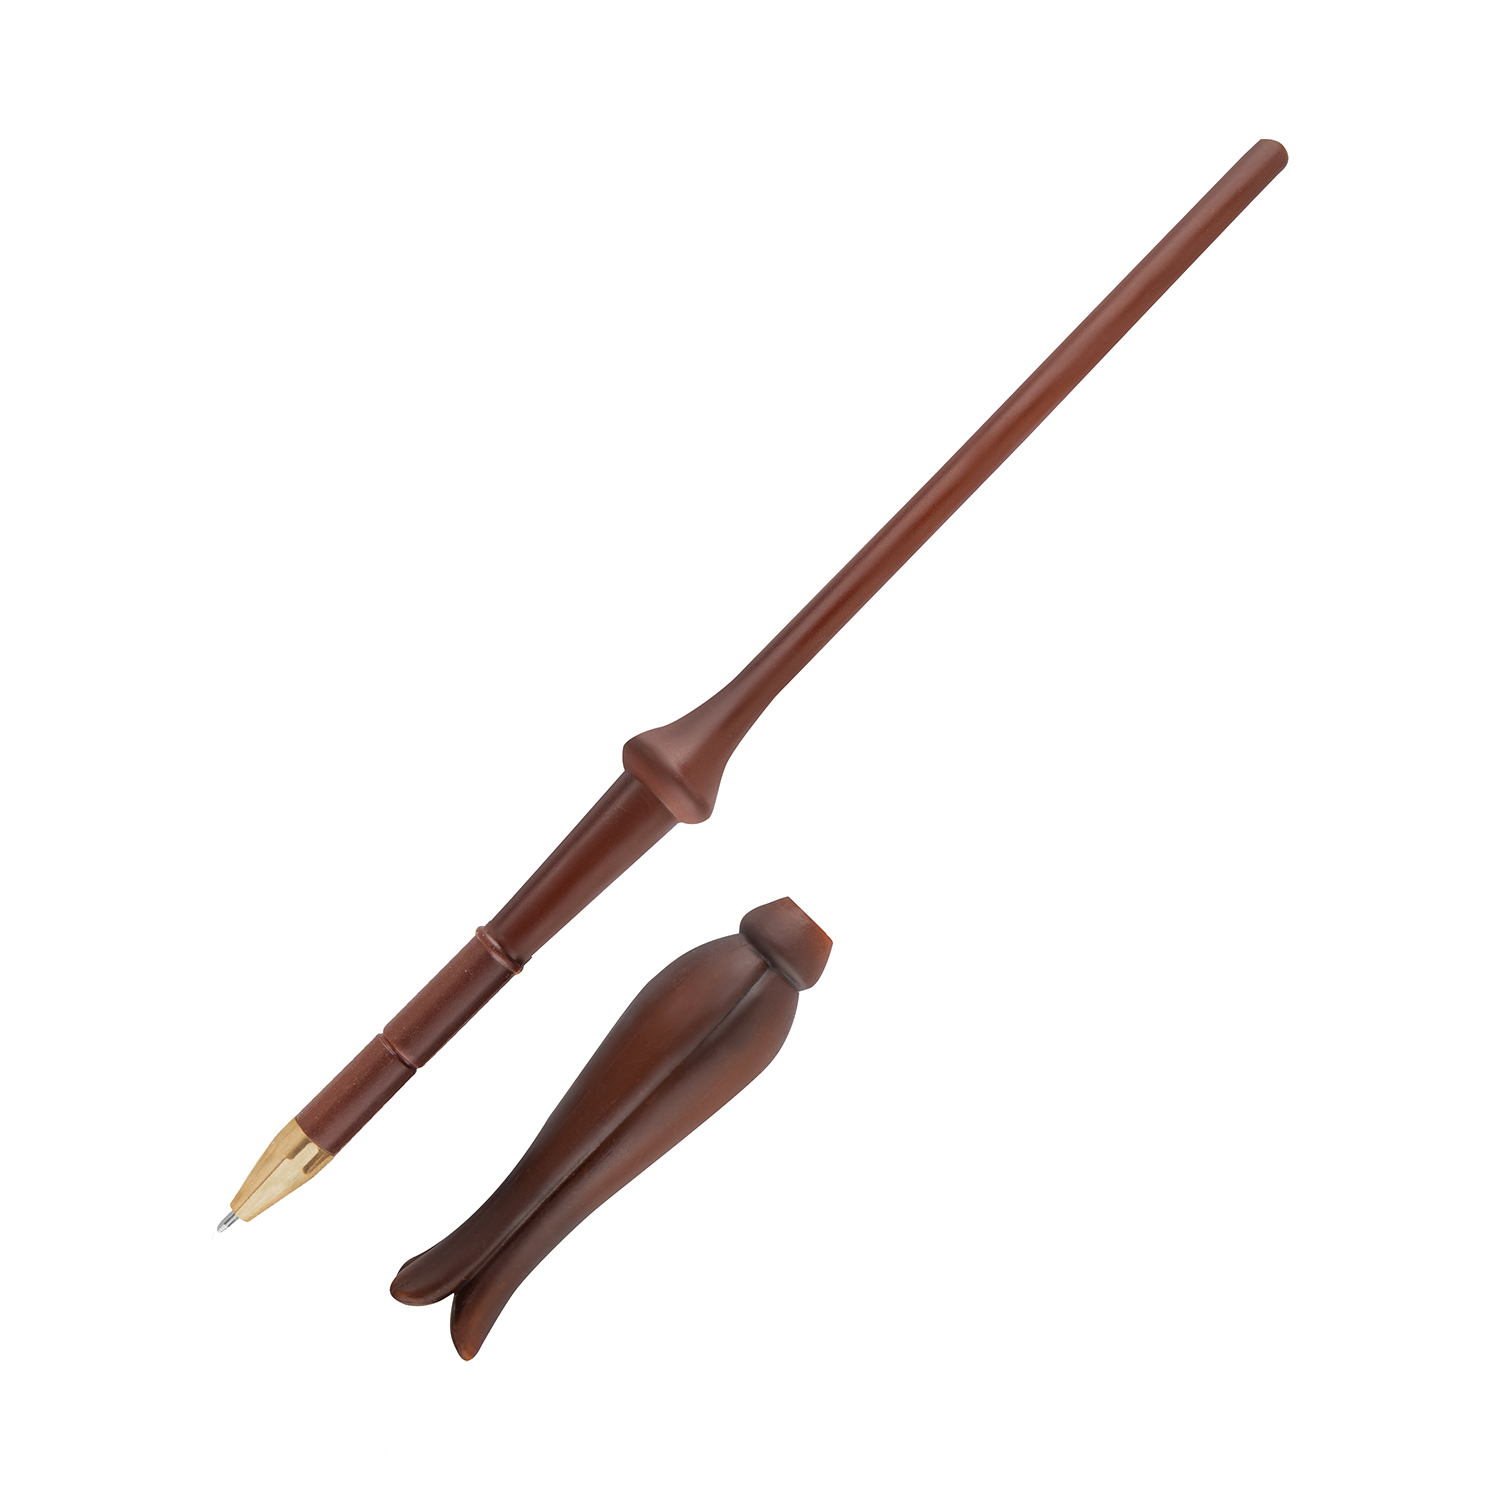 Ручка Harry Potter в виде палочки Полумны Лавгуд 25 см с подставкой и закладкой - фото 3